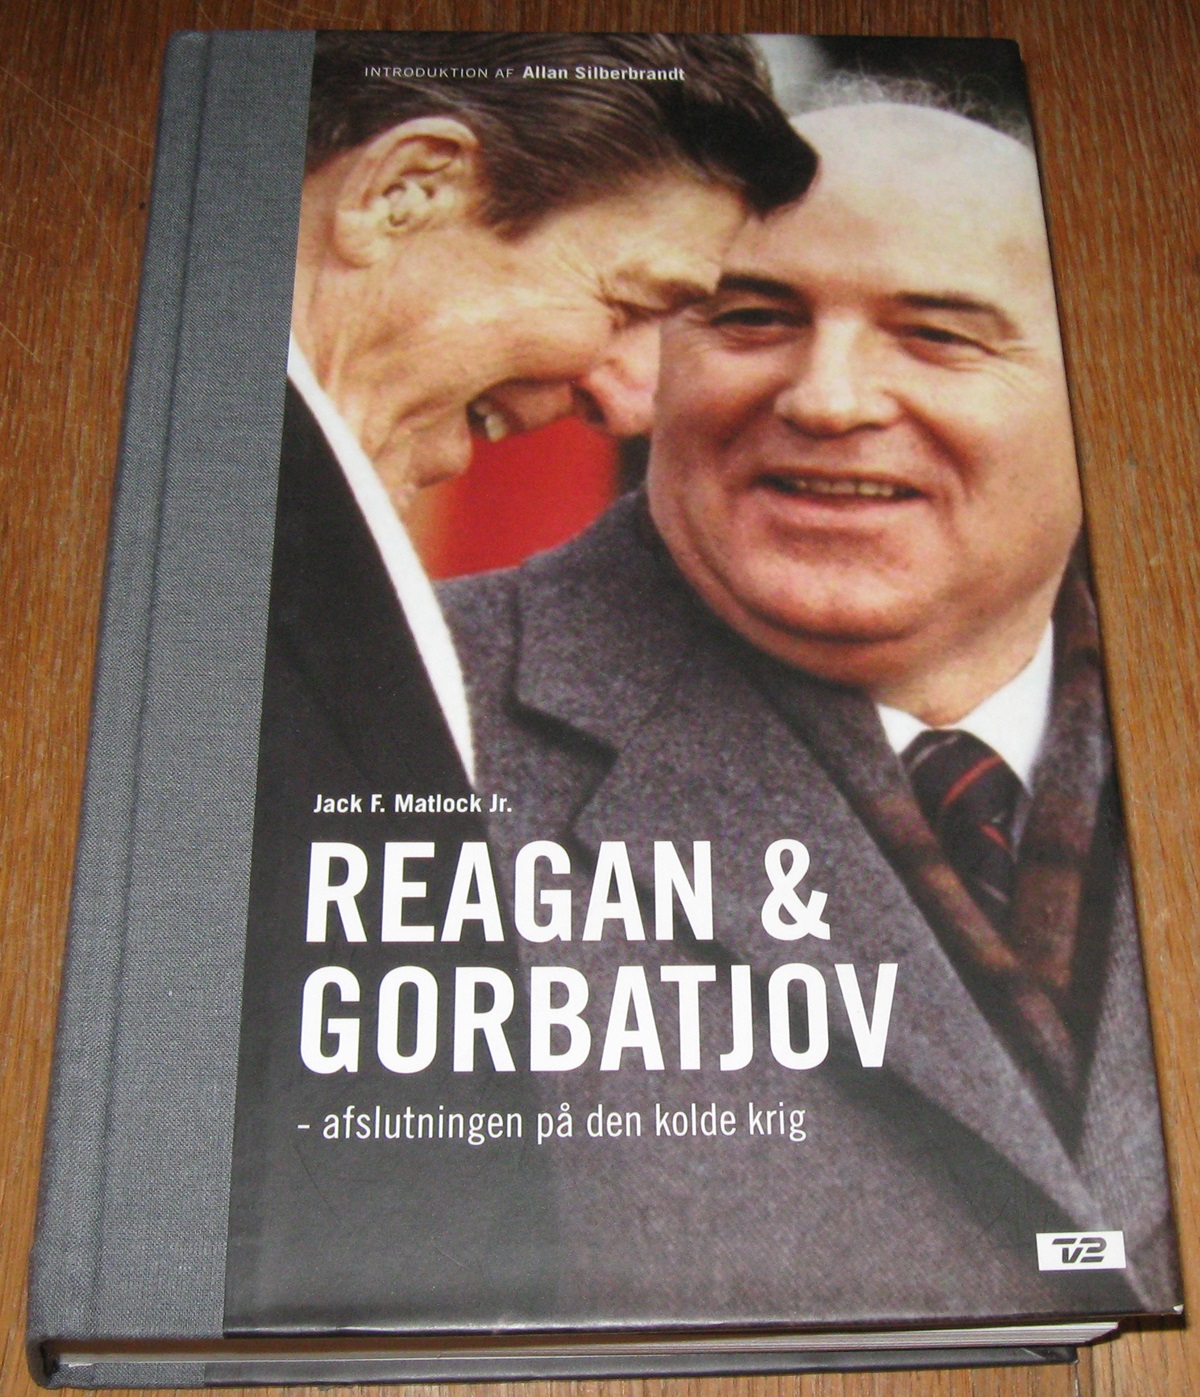 Reagan & Gorbatjov